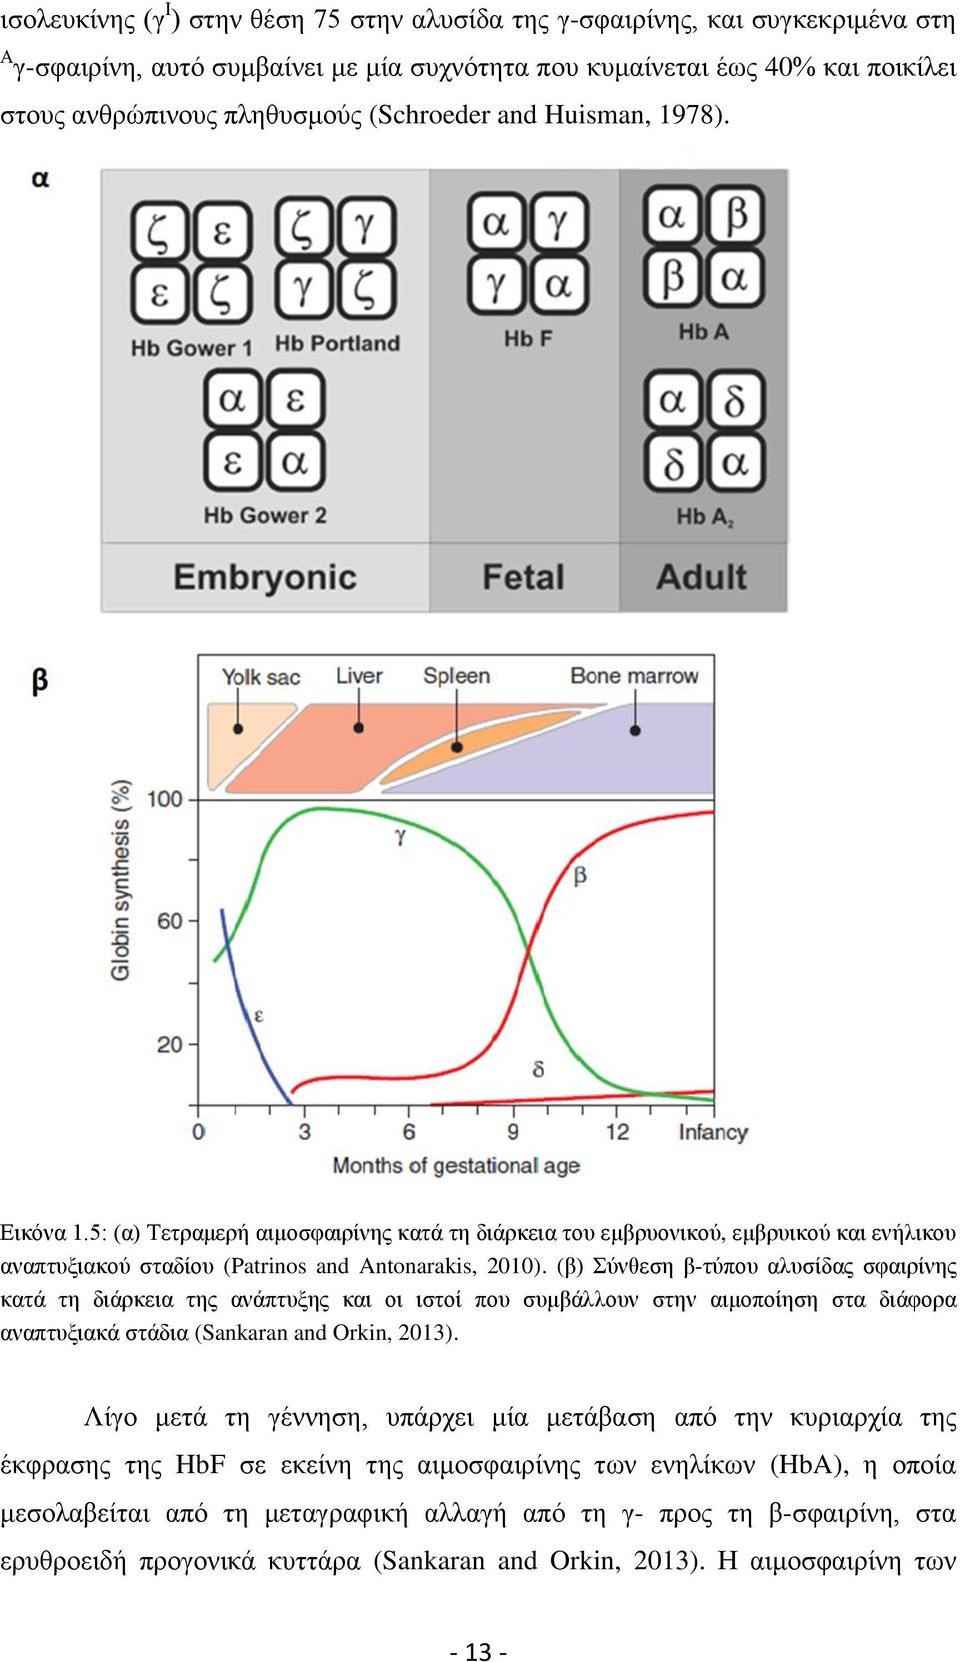 (β) Σύνθεση β-τύπου αλυσίδας σφαιρίνης κατά τη διάρκεια της ανάπτυξης και οι ιστοί που συμβάλλουν στην αιμοποίηση στα διάφορα αναπτυξιακά στάδια (Sankaran and Orkin, 2013).